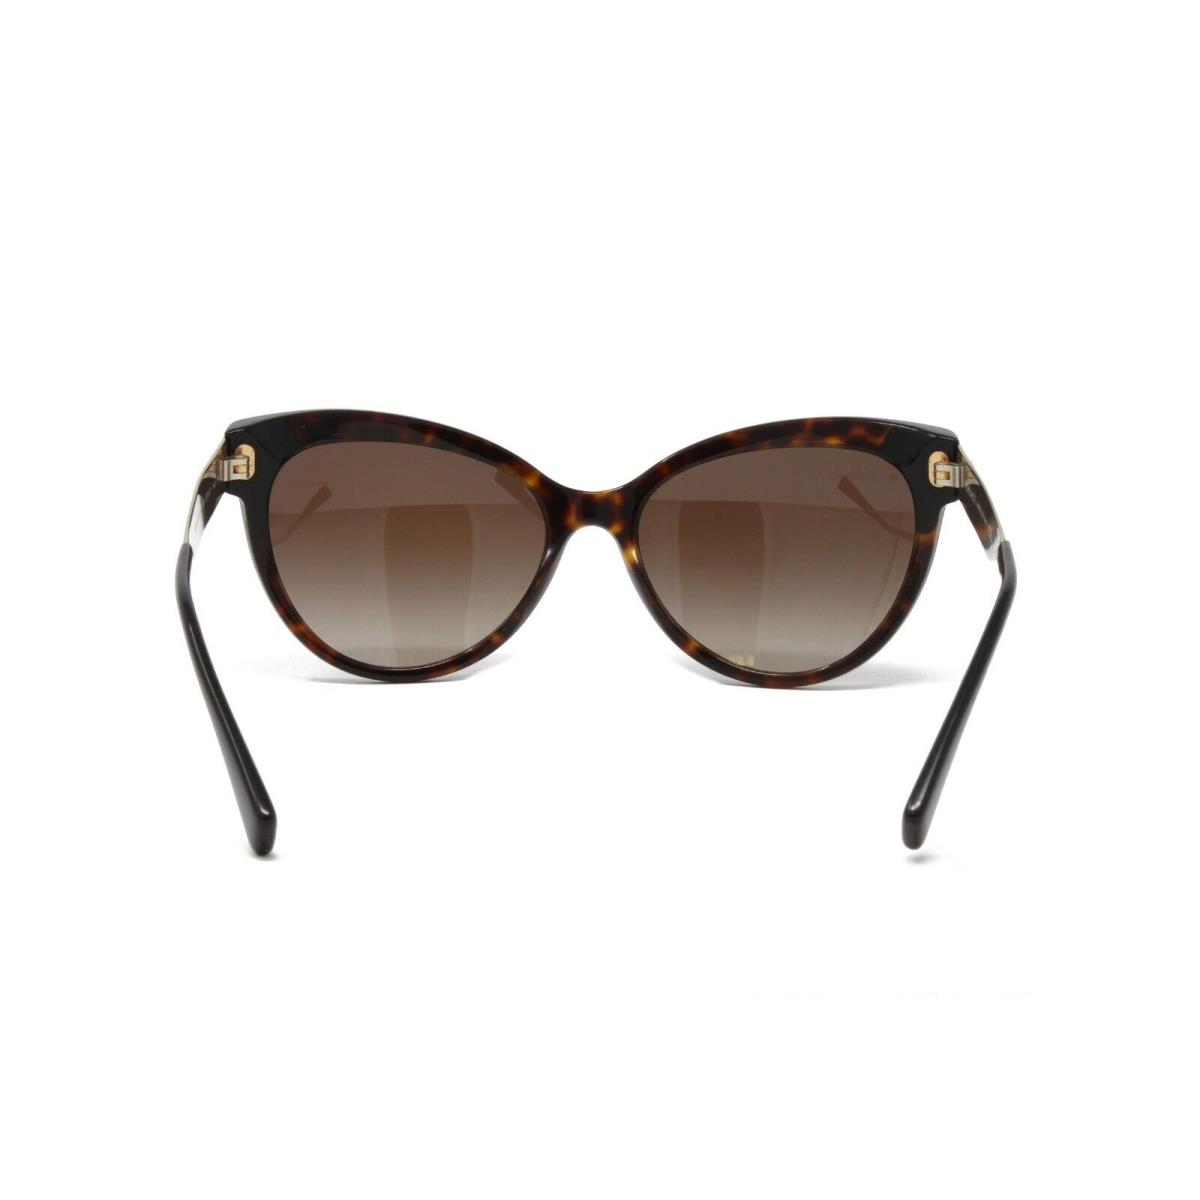 Versace sunglasses Frame - Dark Havana Black Frame, Gray Lens 1